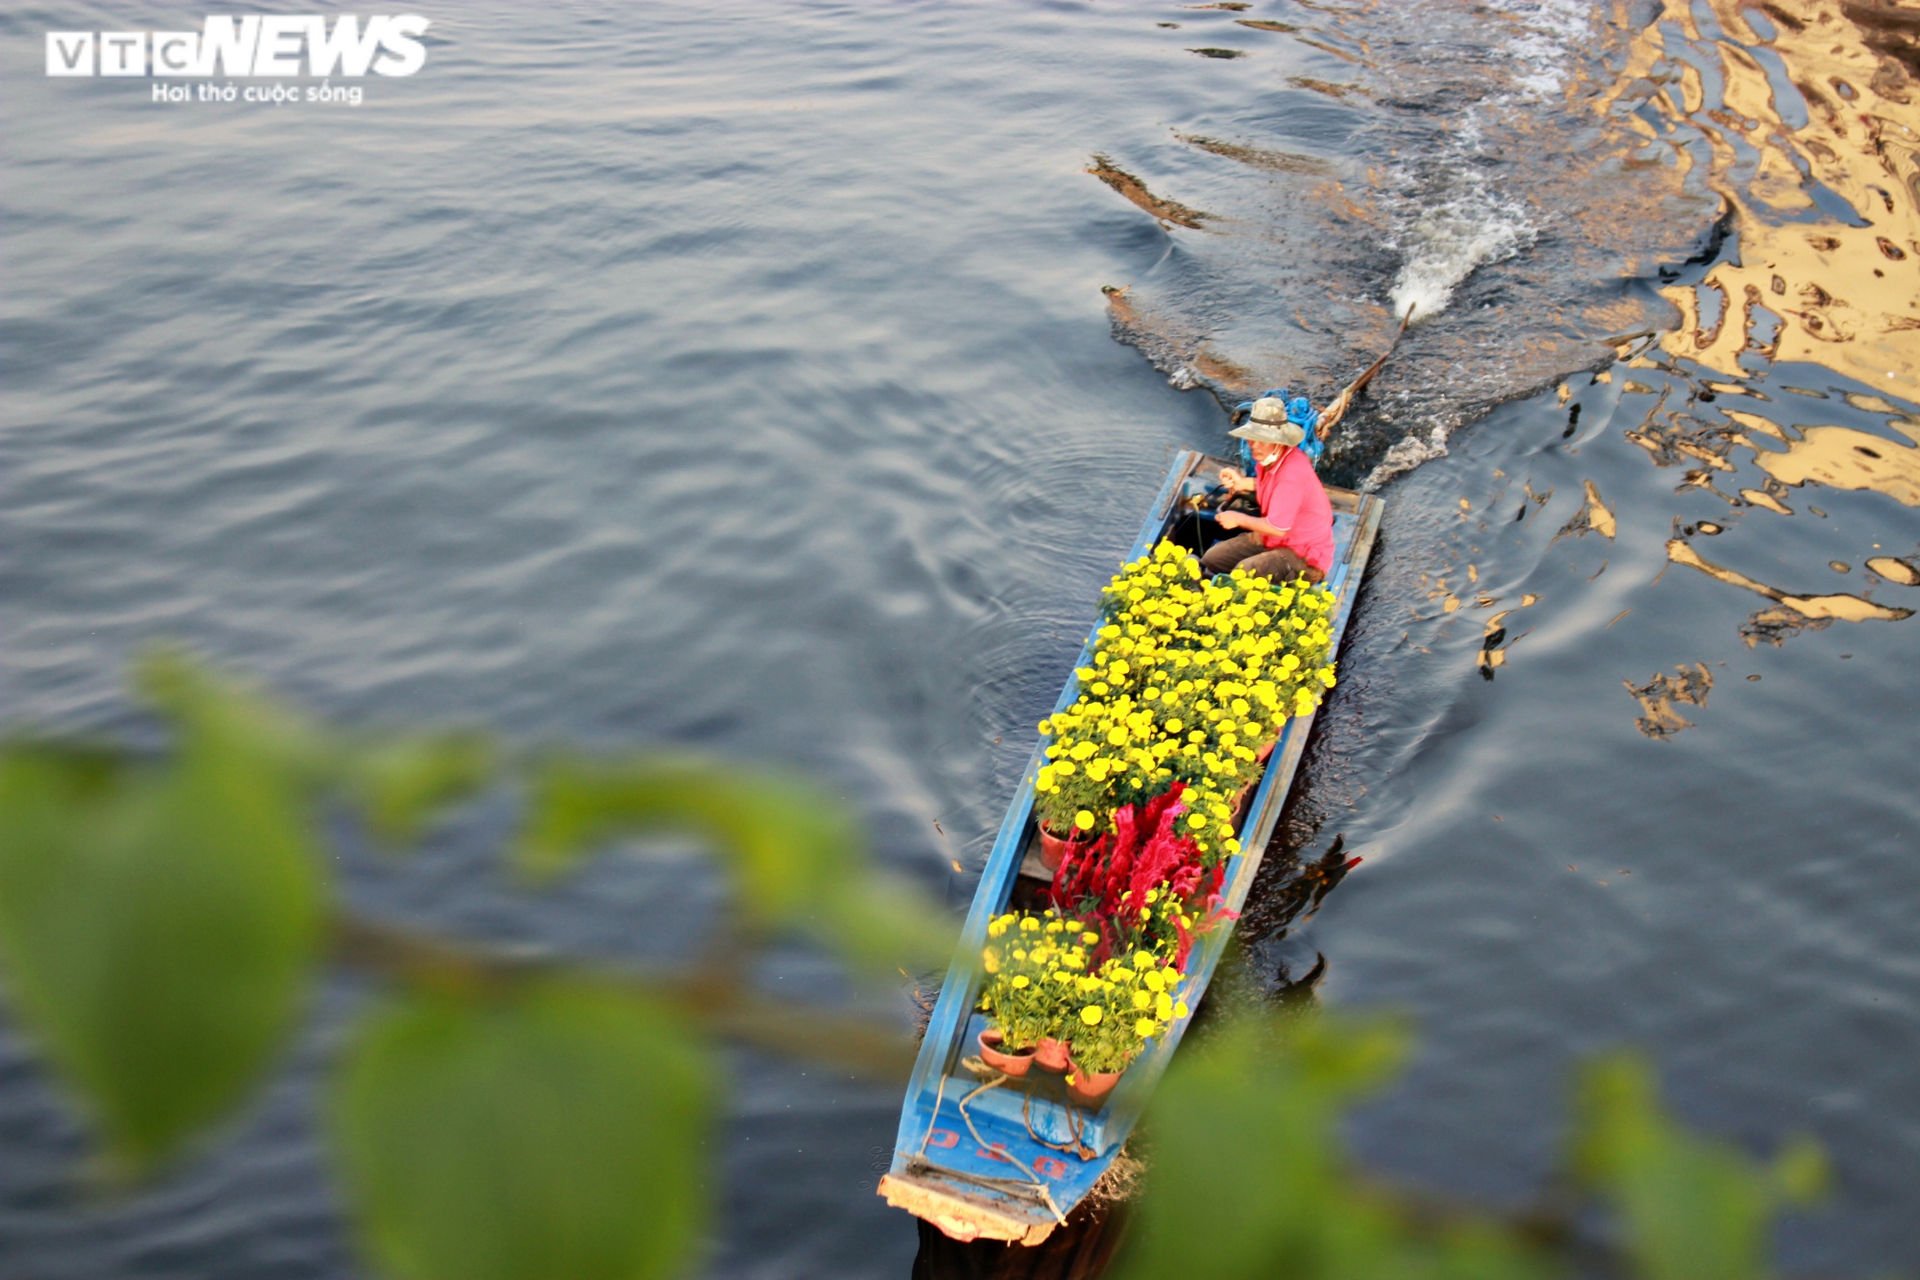 Ảnh: Rực rỡ chợ hoa 'Trên bến, dưới thuyền' ở Sài Gòn - 3